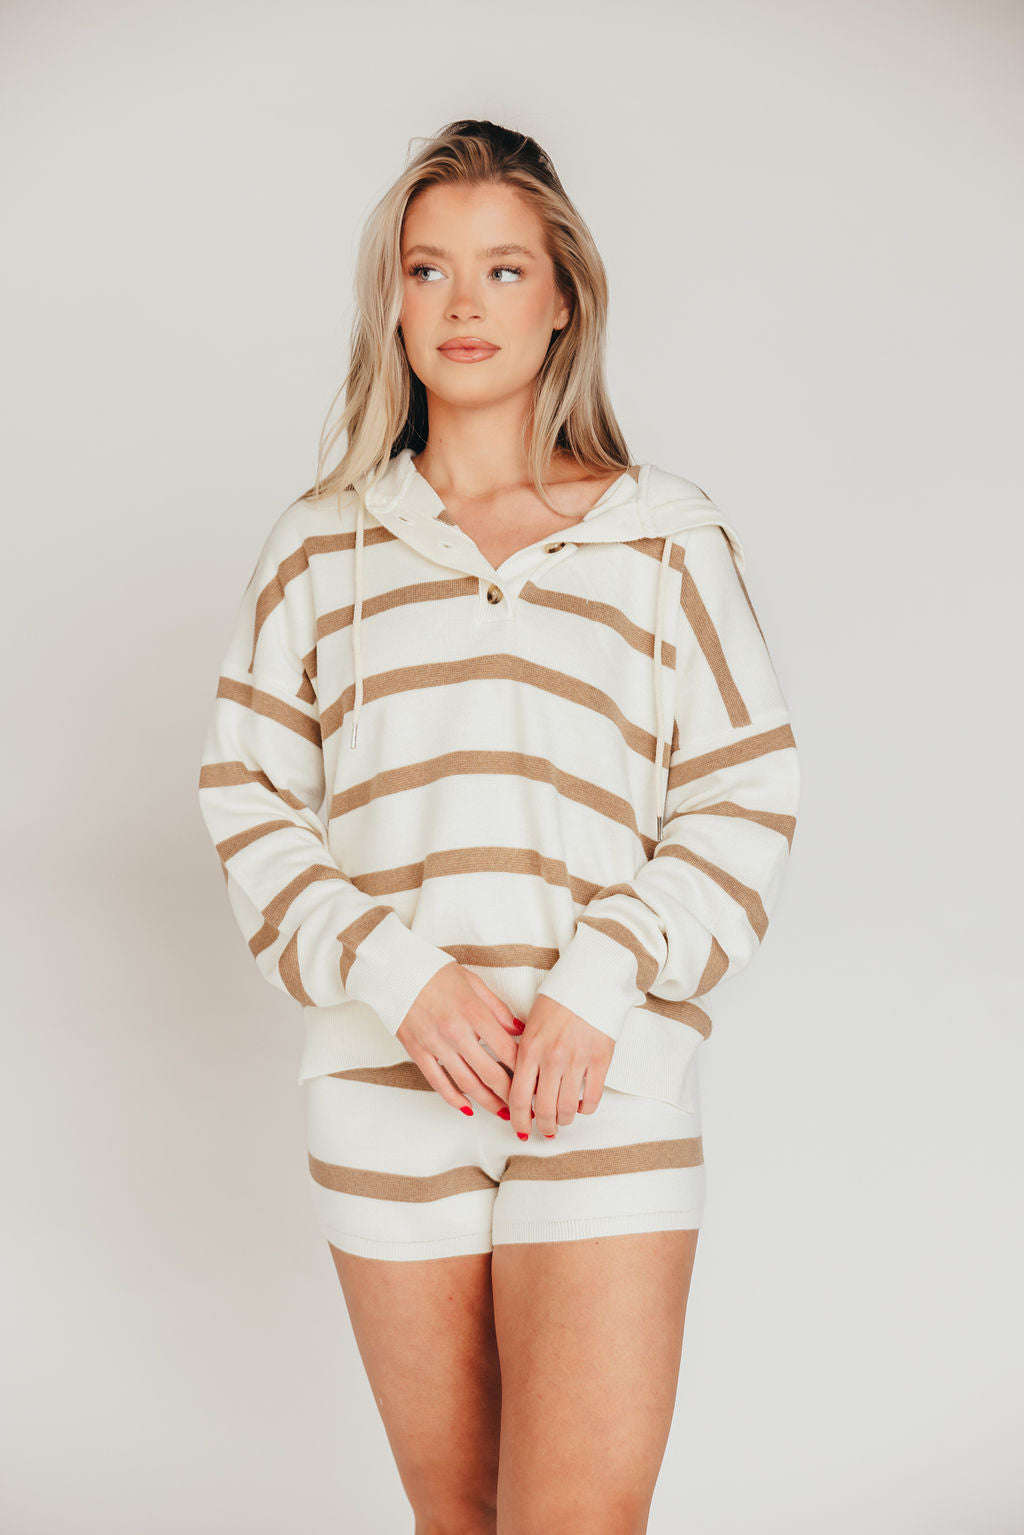 Brighton Pullover Top in White and Wheat Stripe